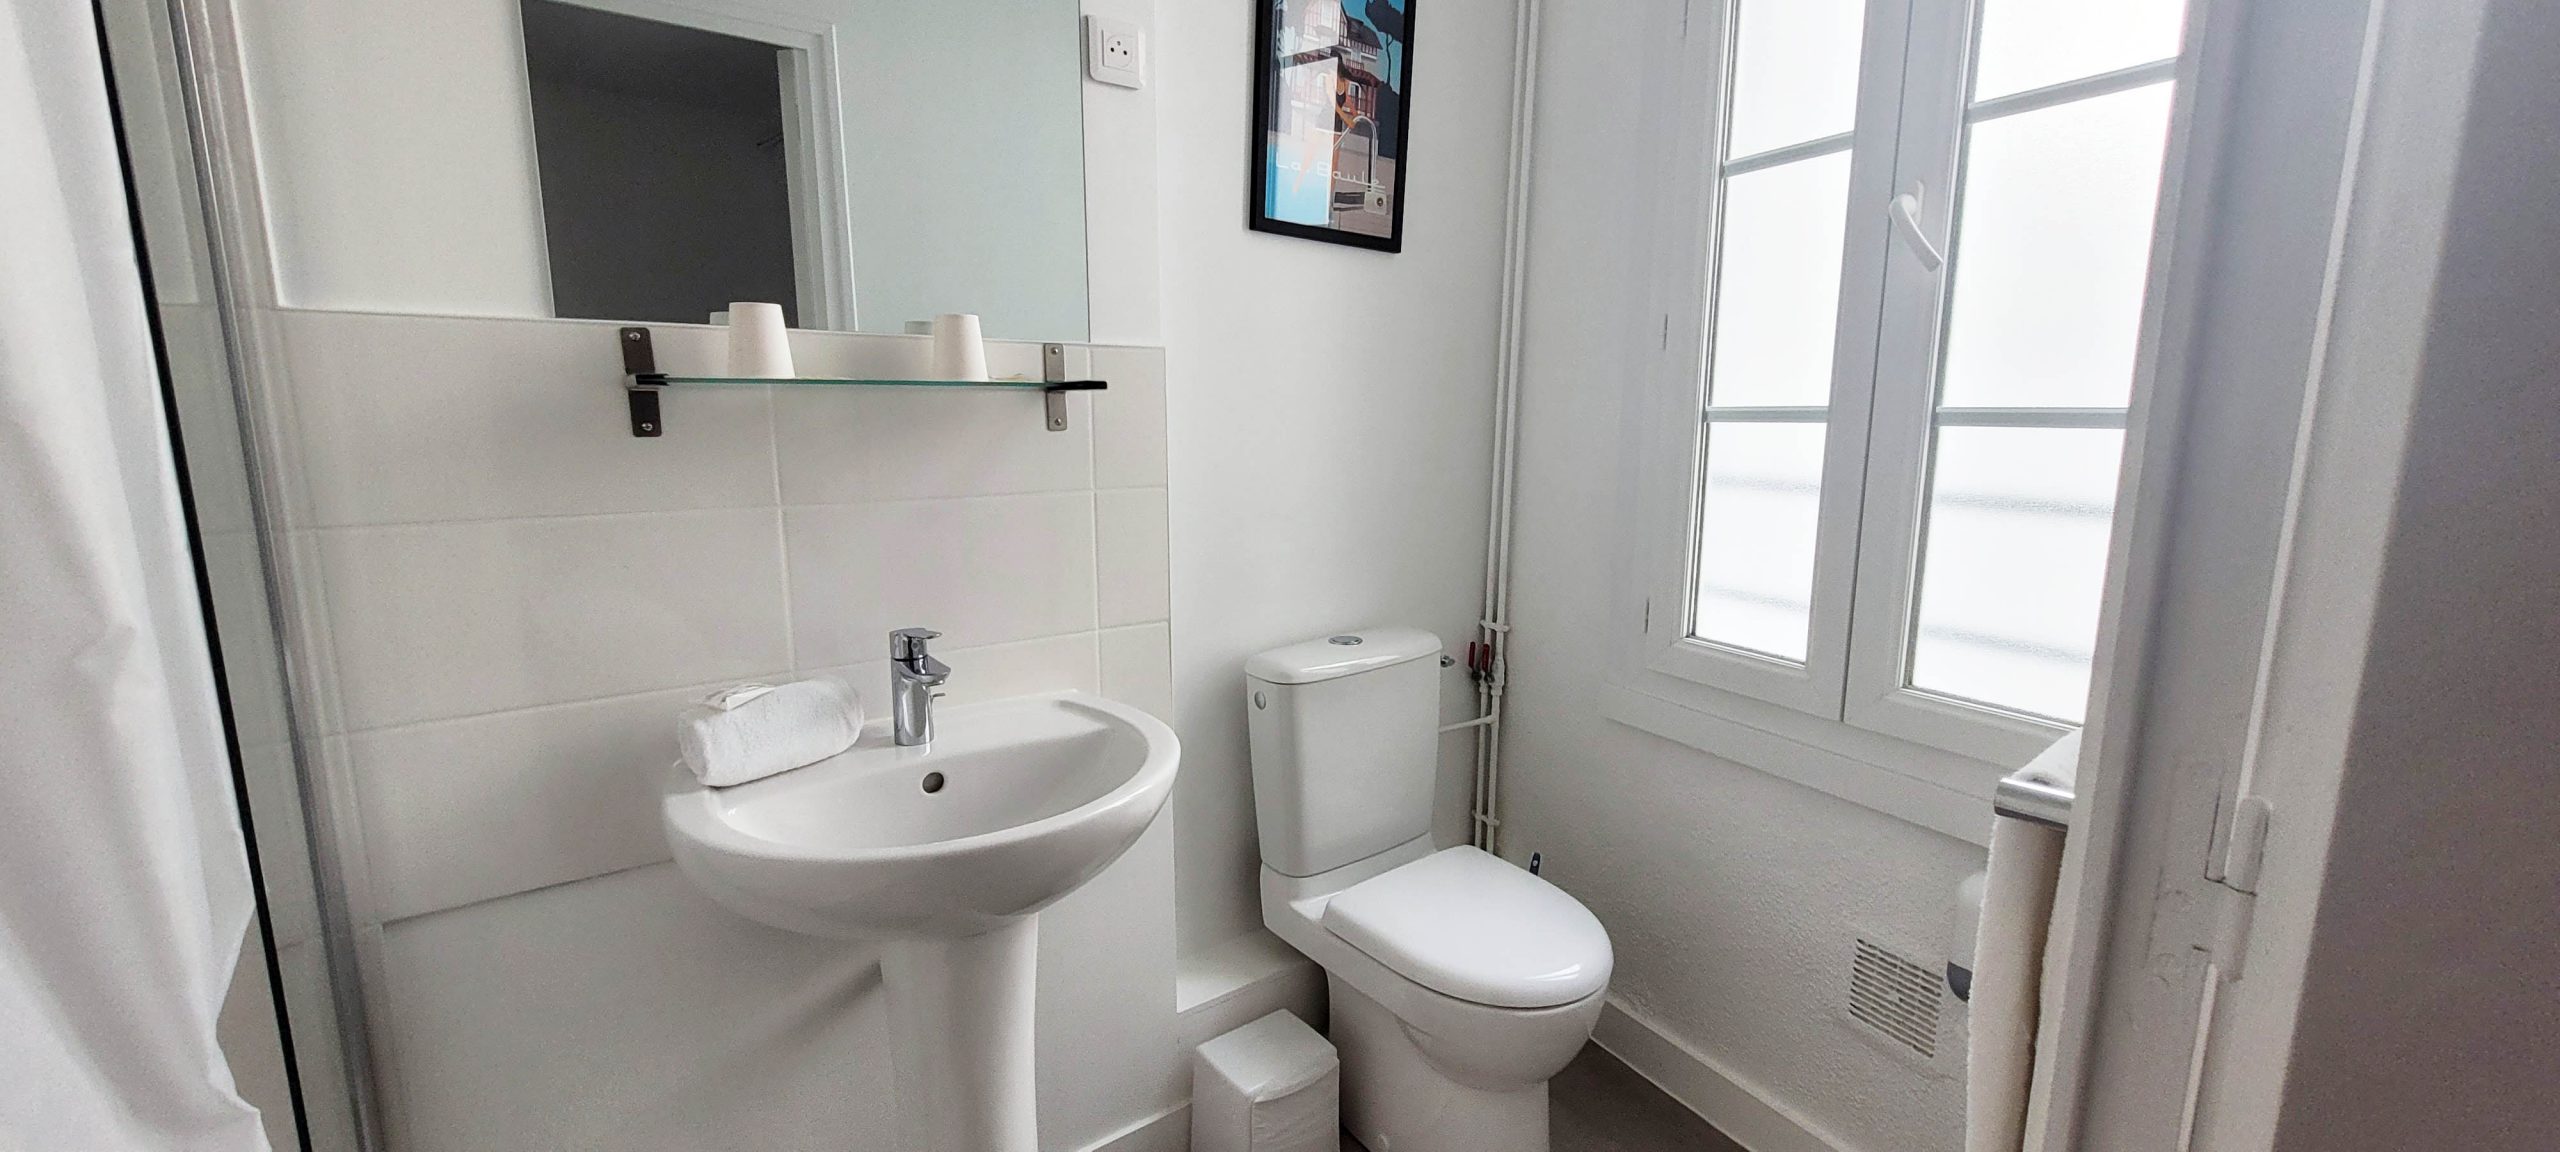 Chambre Double Confort avec Salle de Douche et WC Privatifs